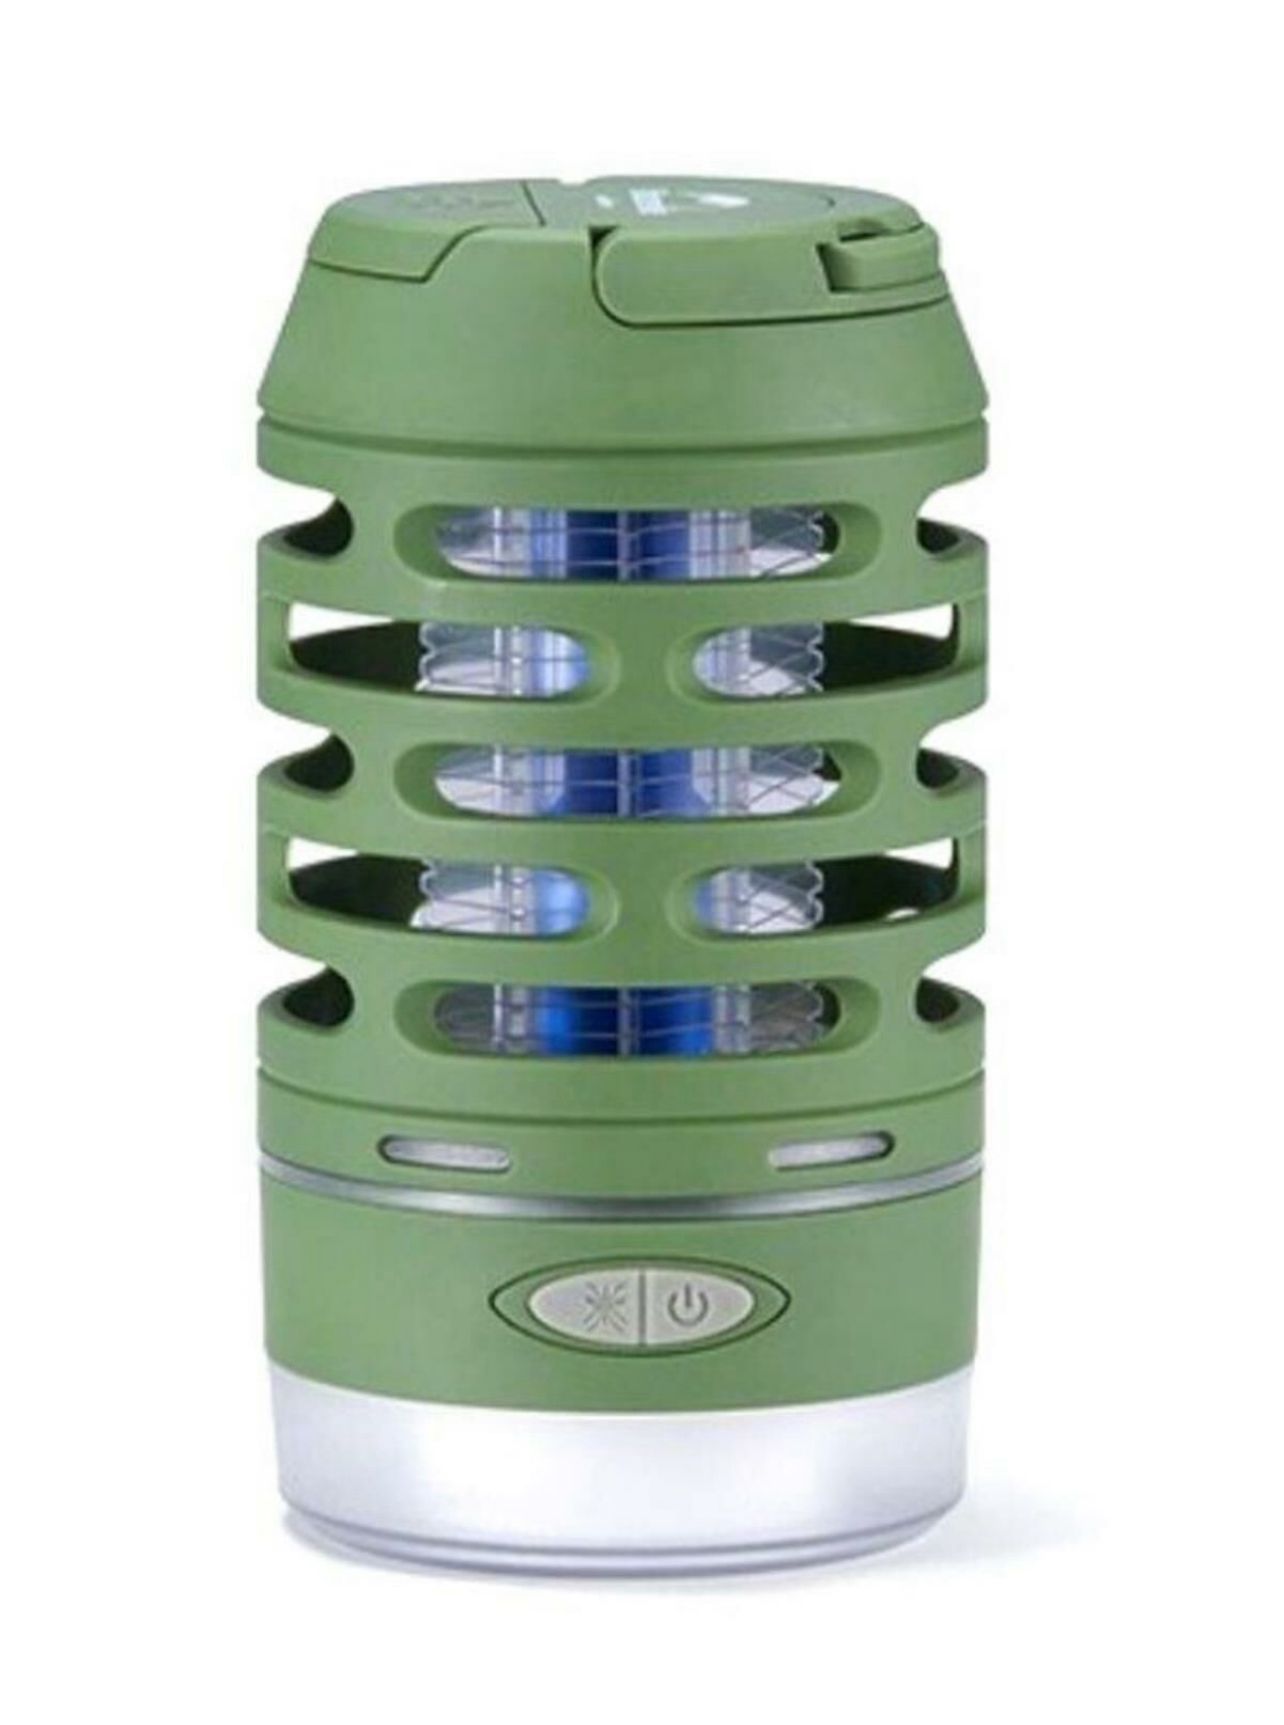 Naturehike Multi-Fonksiyonel Sivrisinek Kovucu & LED Kamp Lambası yeşil